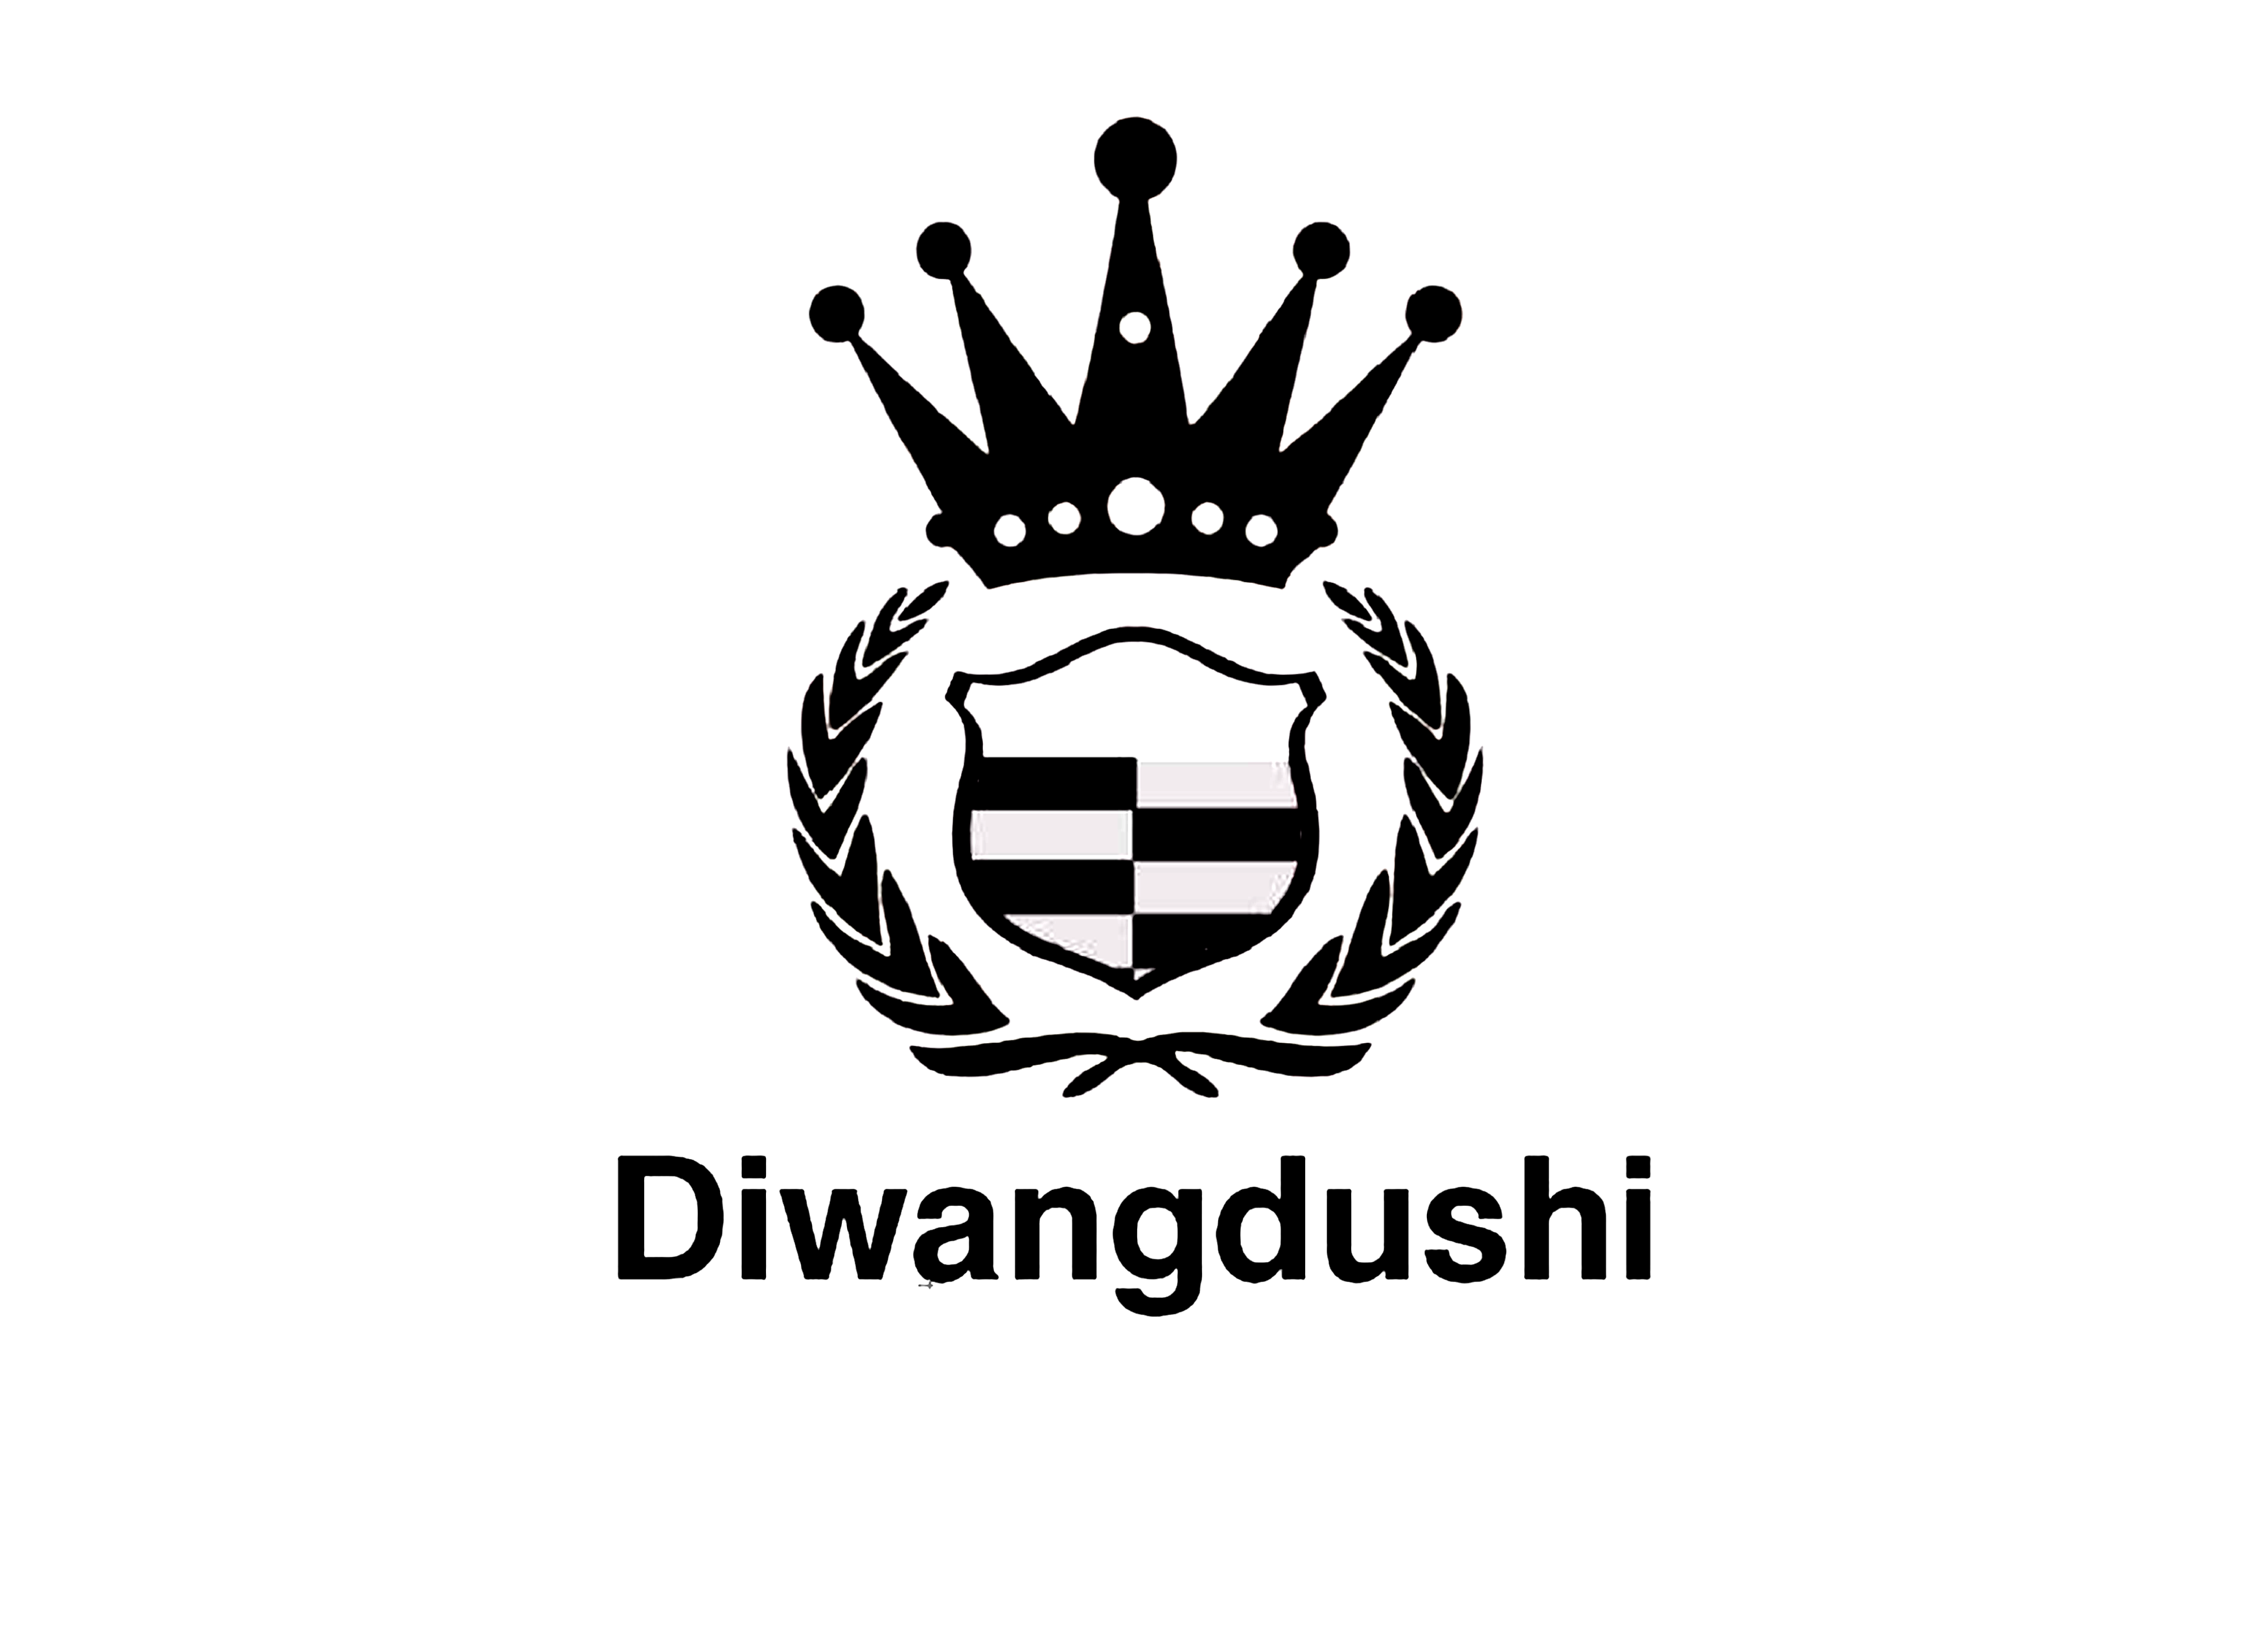 DIWANGDUSHI